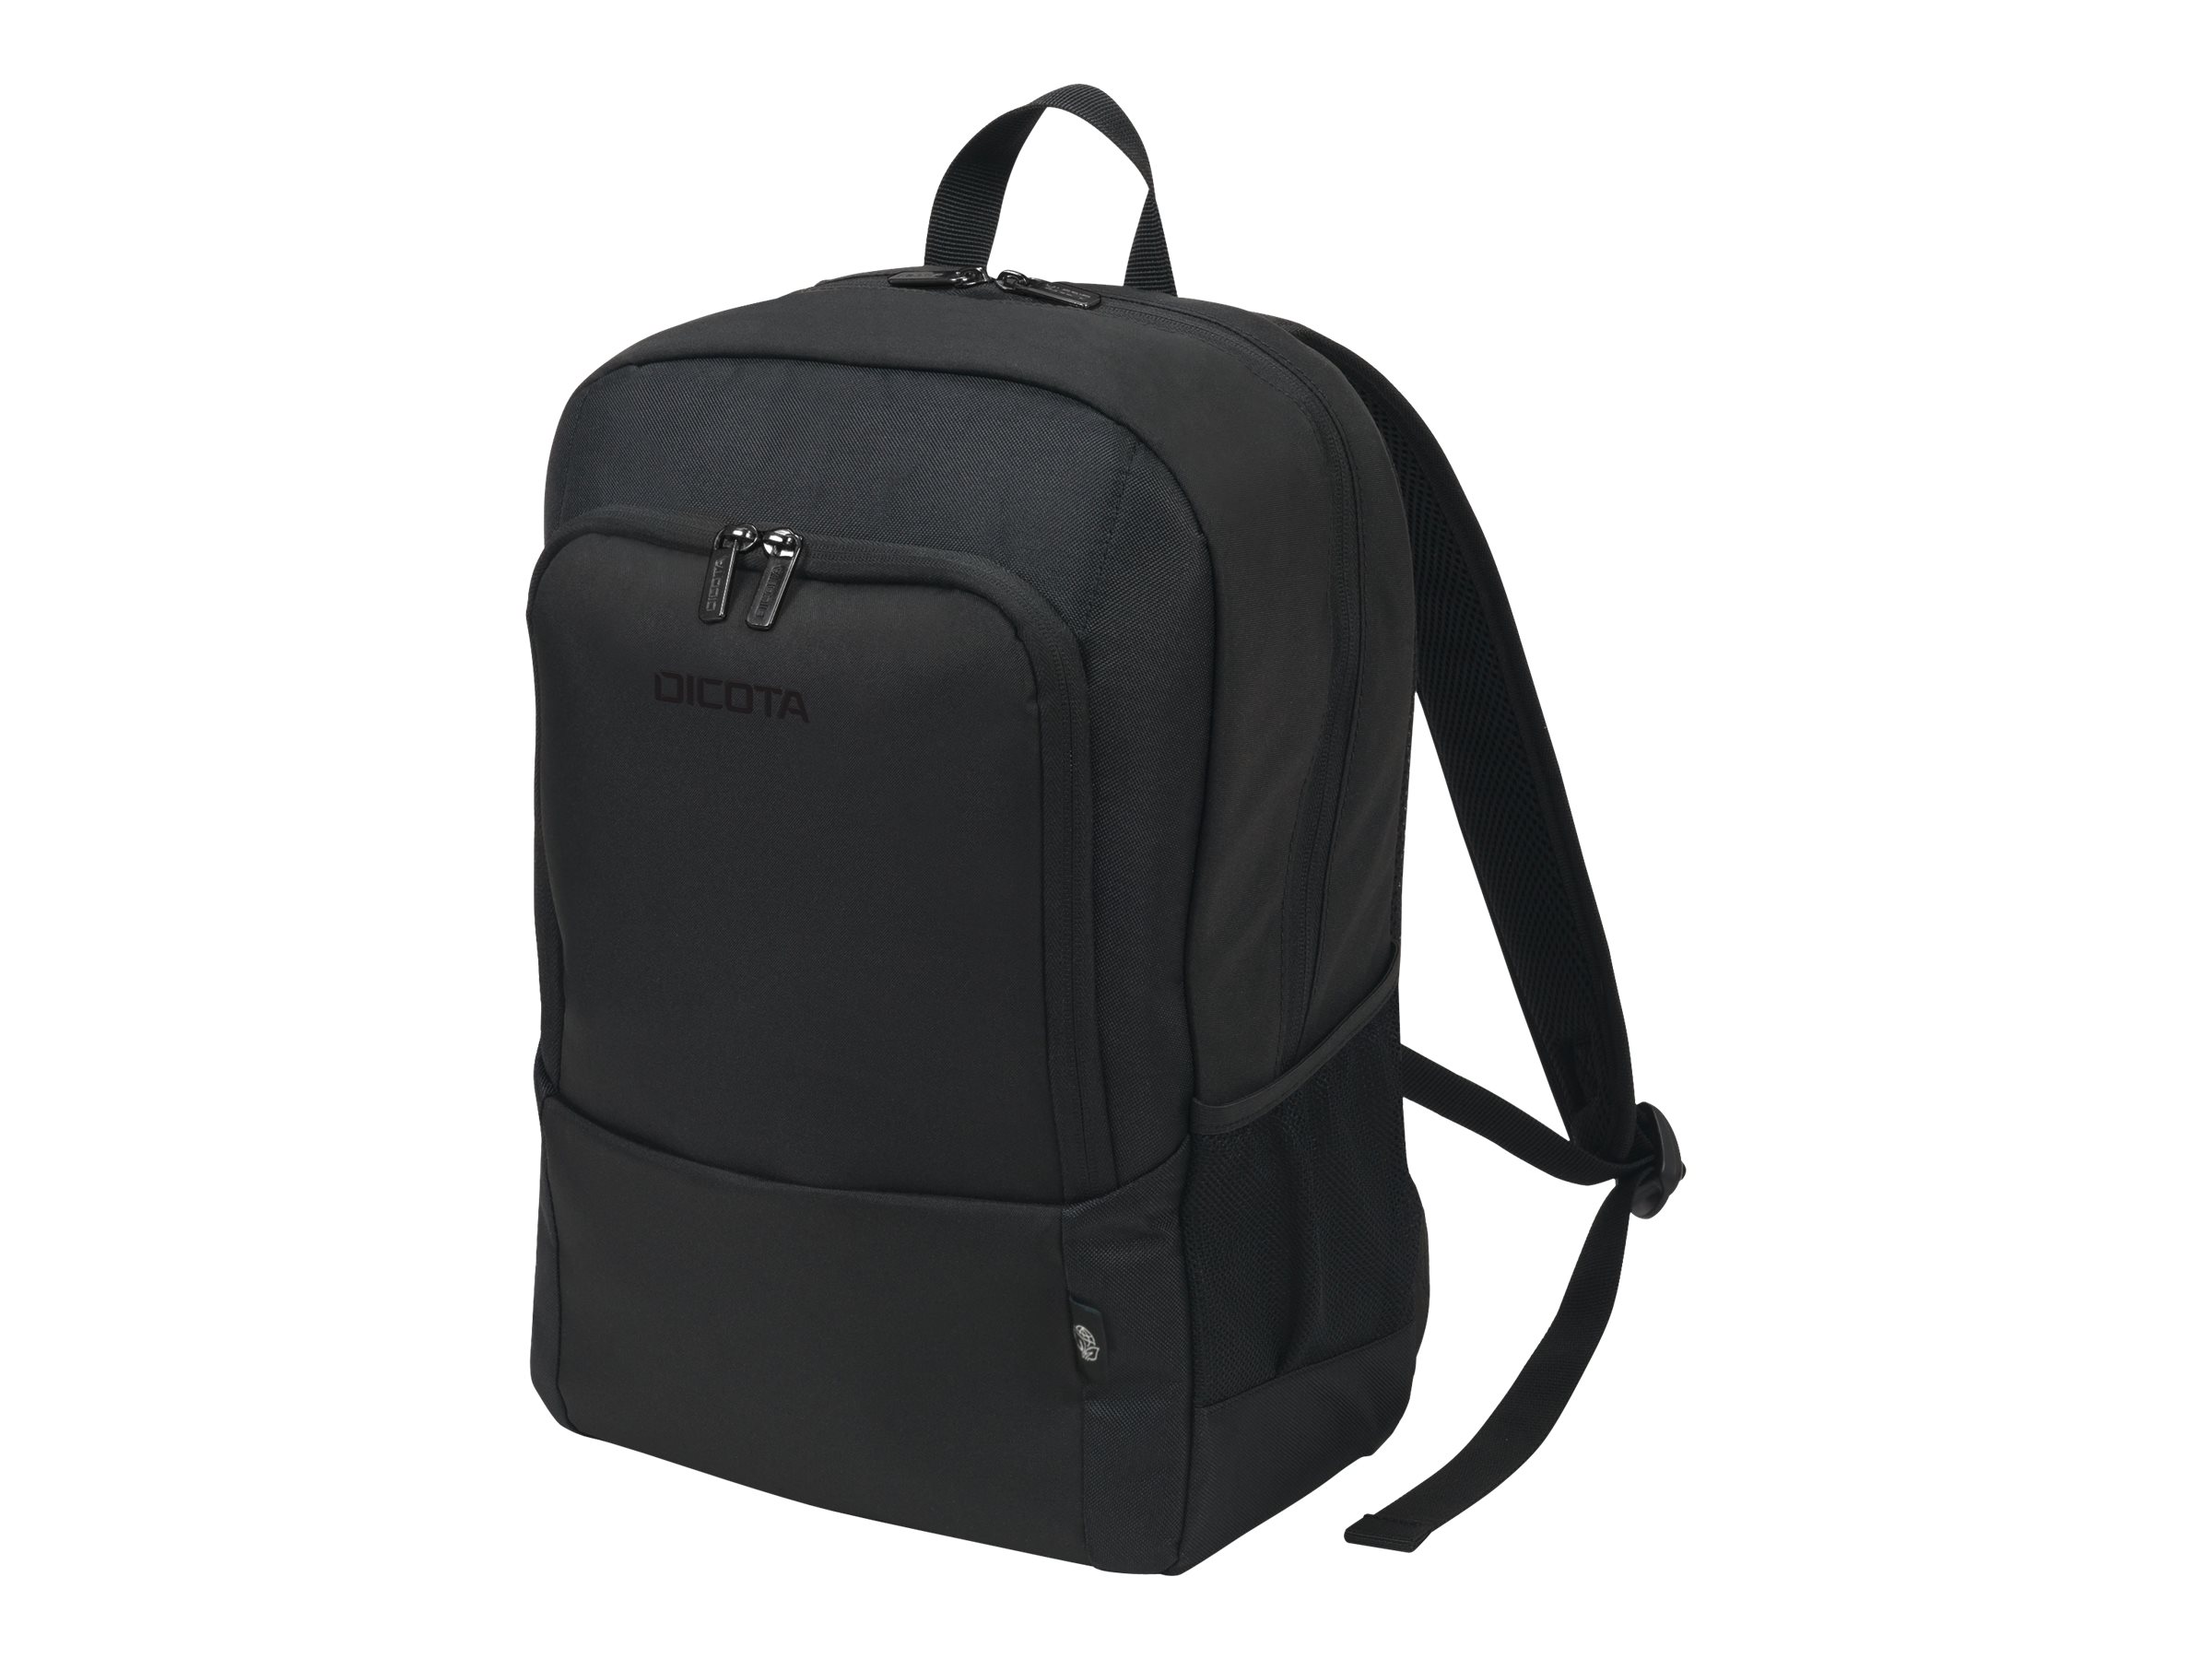 Dicota Eco Backpack BASE 13-14.1 Black